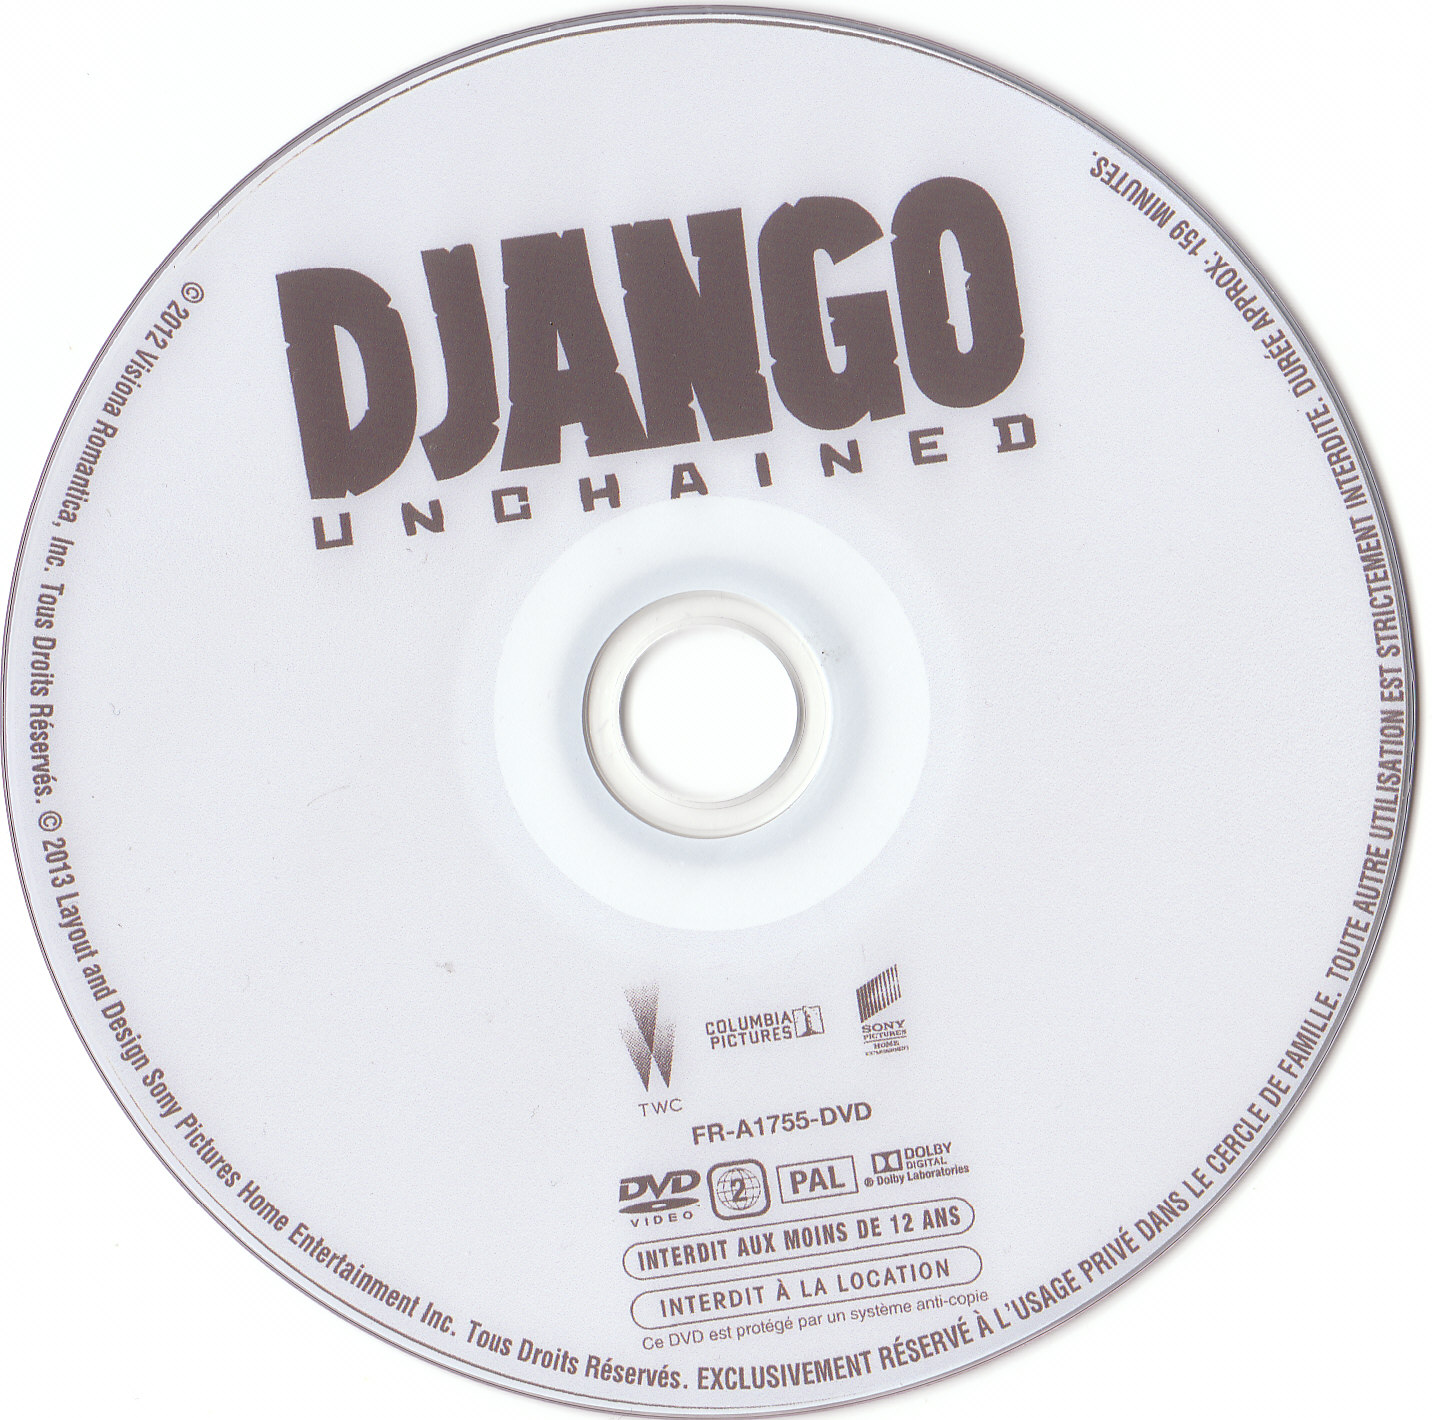 Django unchained